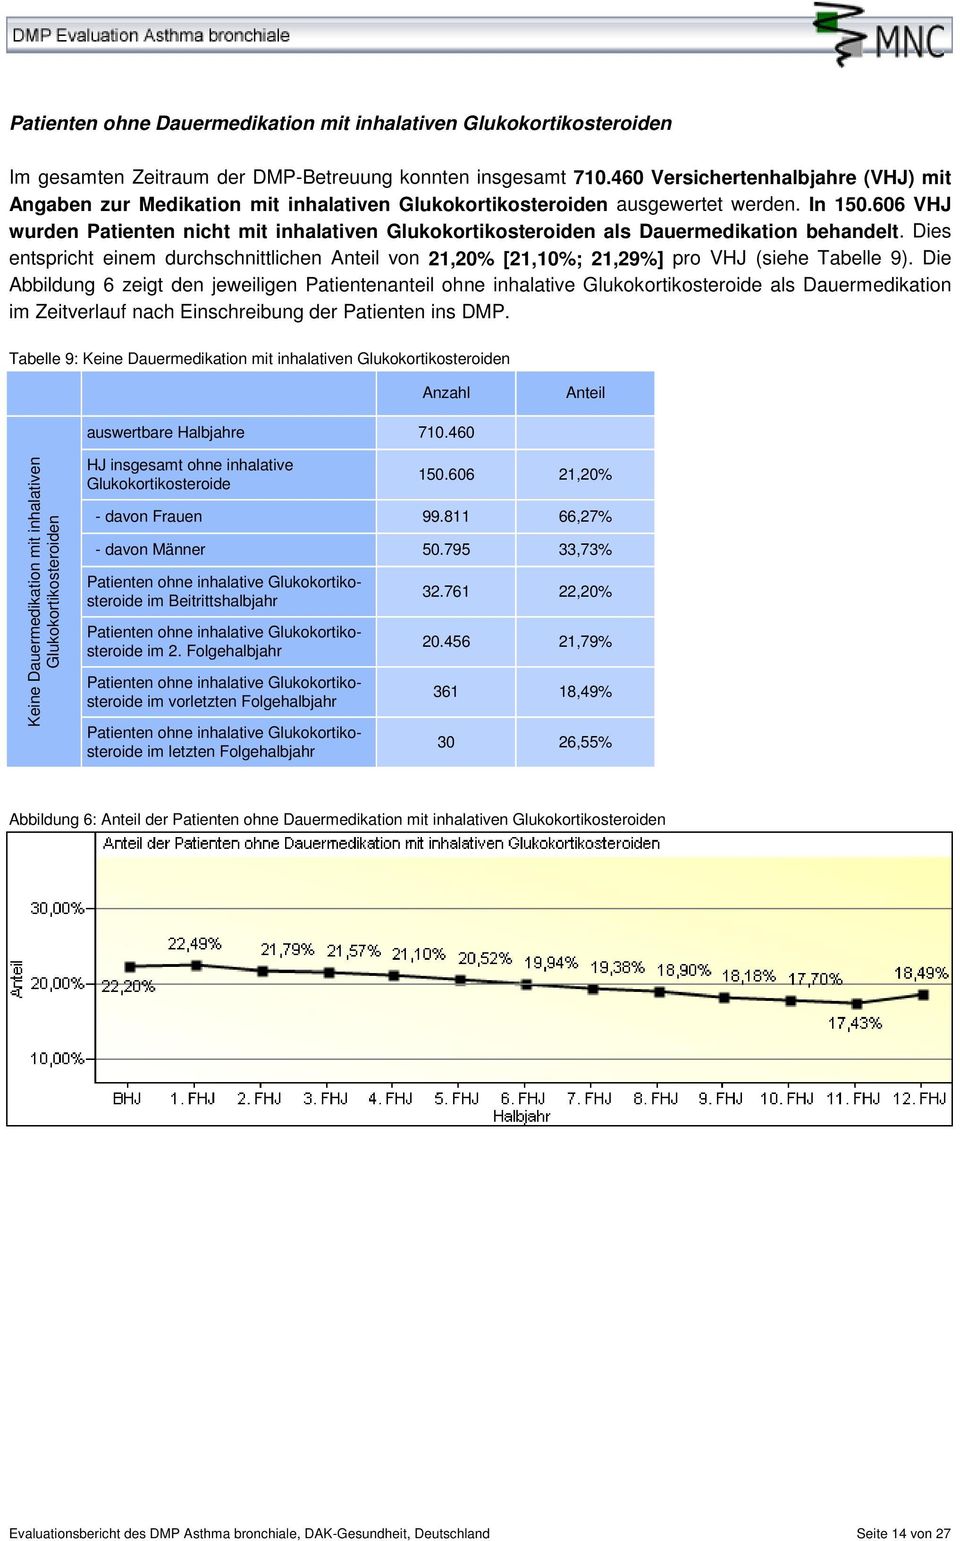 606 VHJ wurden Patienten nicht mit inhalativen Glukokortikosteroiden als Dauermedikation behandelt. Dies entspricht einem durchschnittlichen von 21,20% [21,10%; 21,29%] pro VHJ (siehe Tabelle 9).